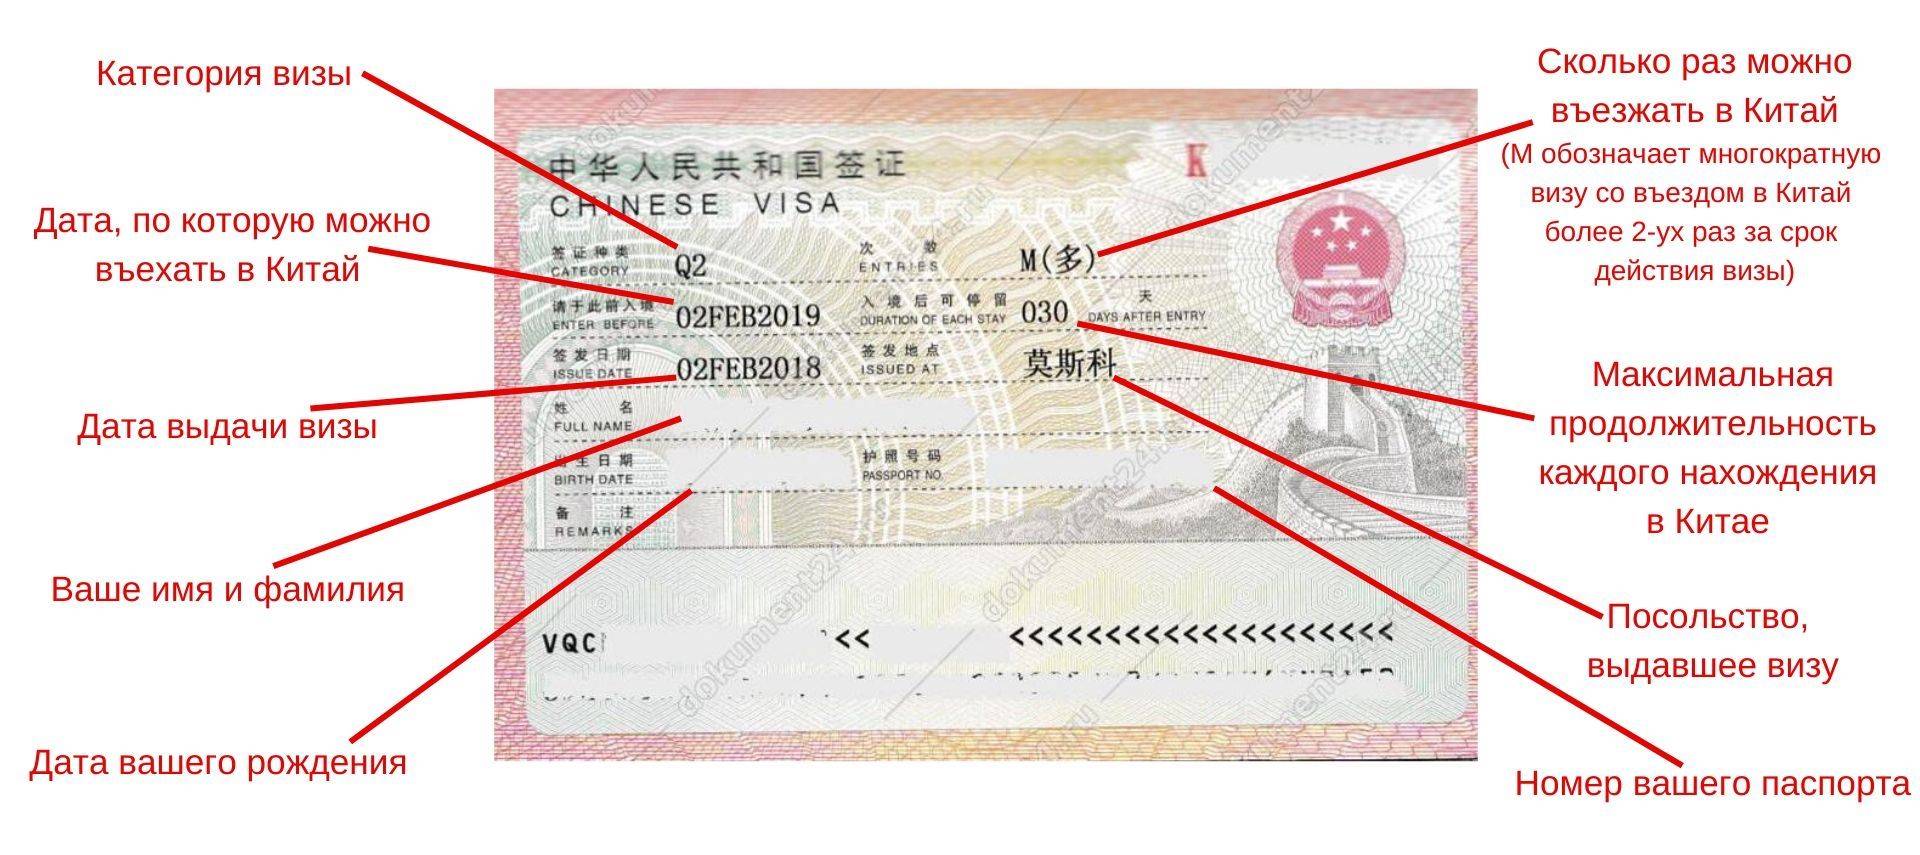 Рабочая виза в китай: правила оформления для россиян
рабочая виза в китай: правила оформления для россиян